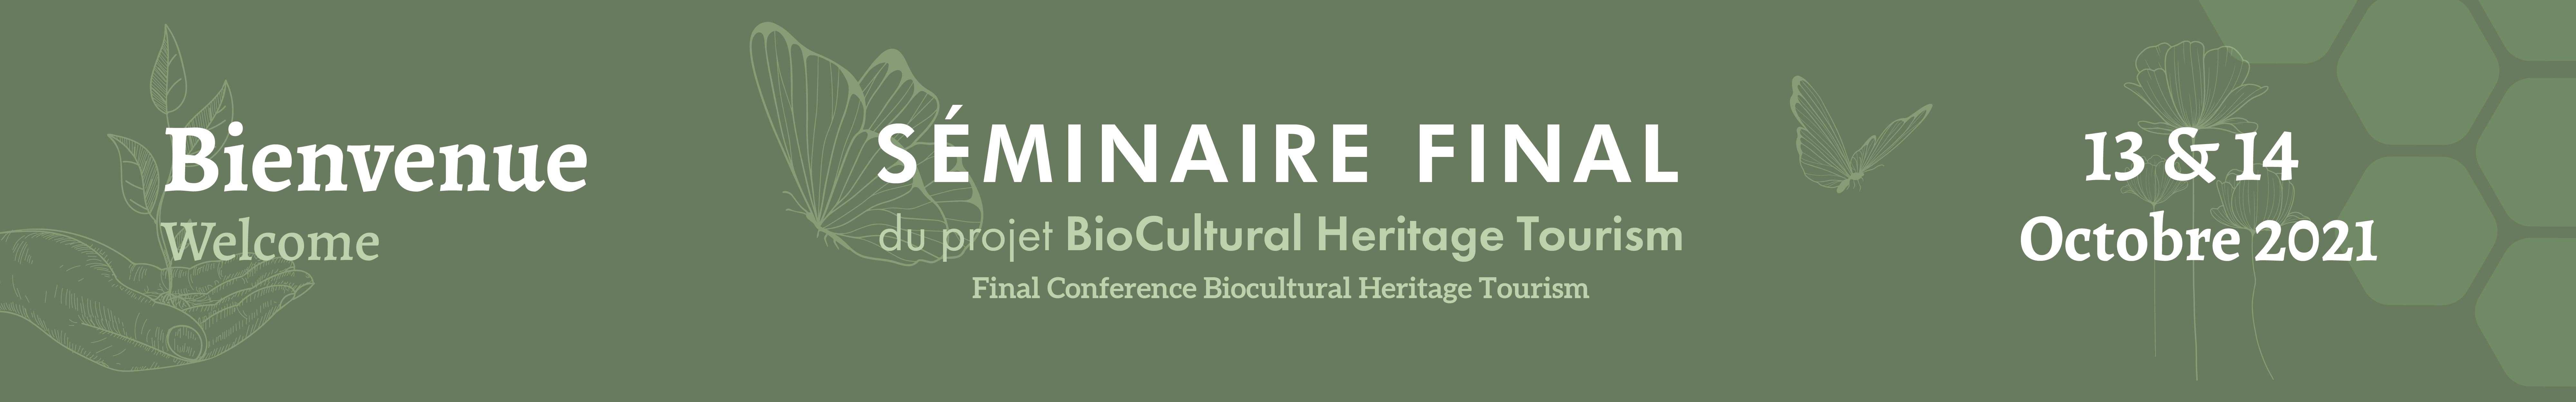 SÉMINAIRE FINAL du projet BioCultural Heritage Tourism | Final Conference Biocultural Heritage Tourism - 13 & 14 octobre 2021